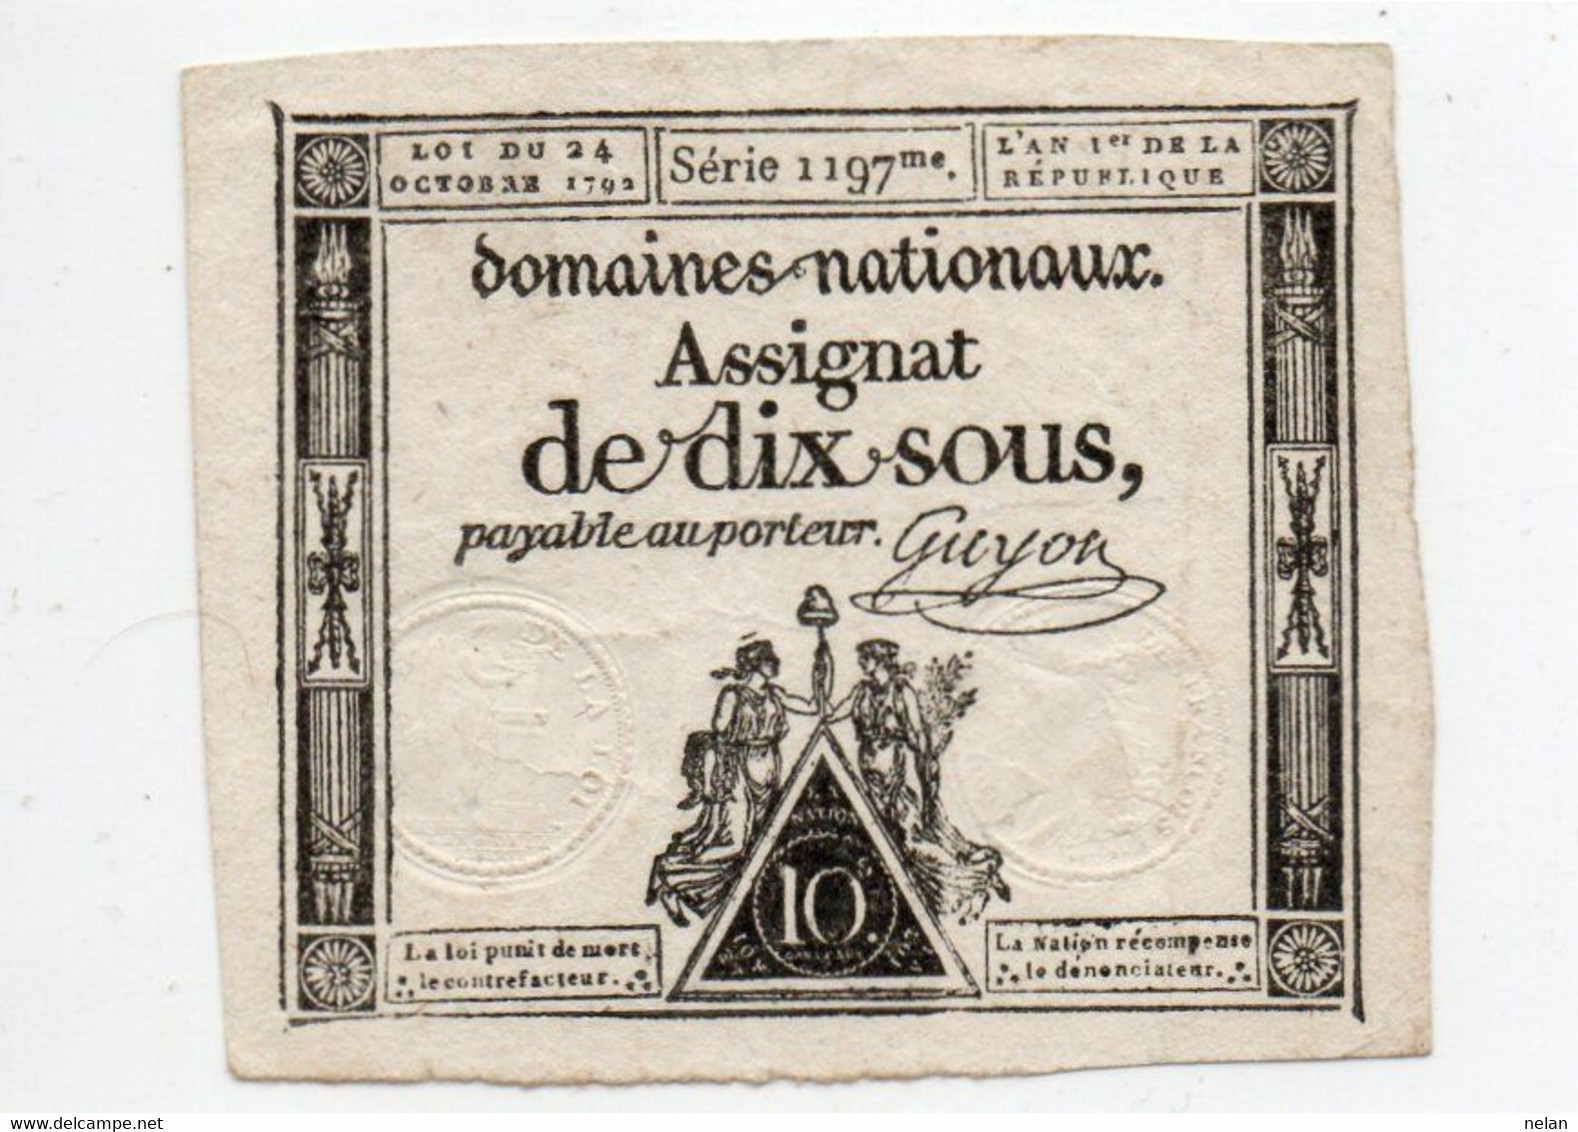 FRANCIA  ASSIGNAT 10 SOLS 1793 P-A68 - ...-1889 Anciens Francs Circulés Au XIXème